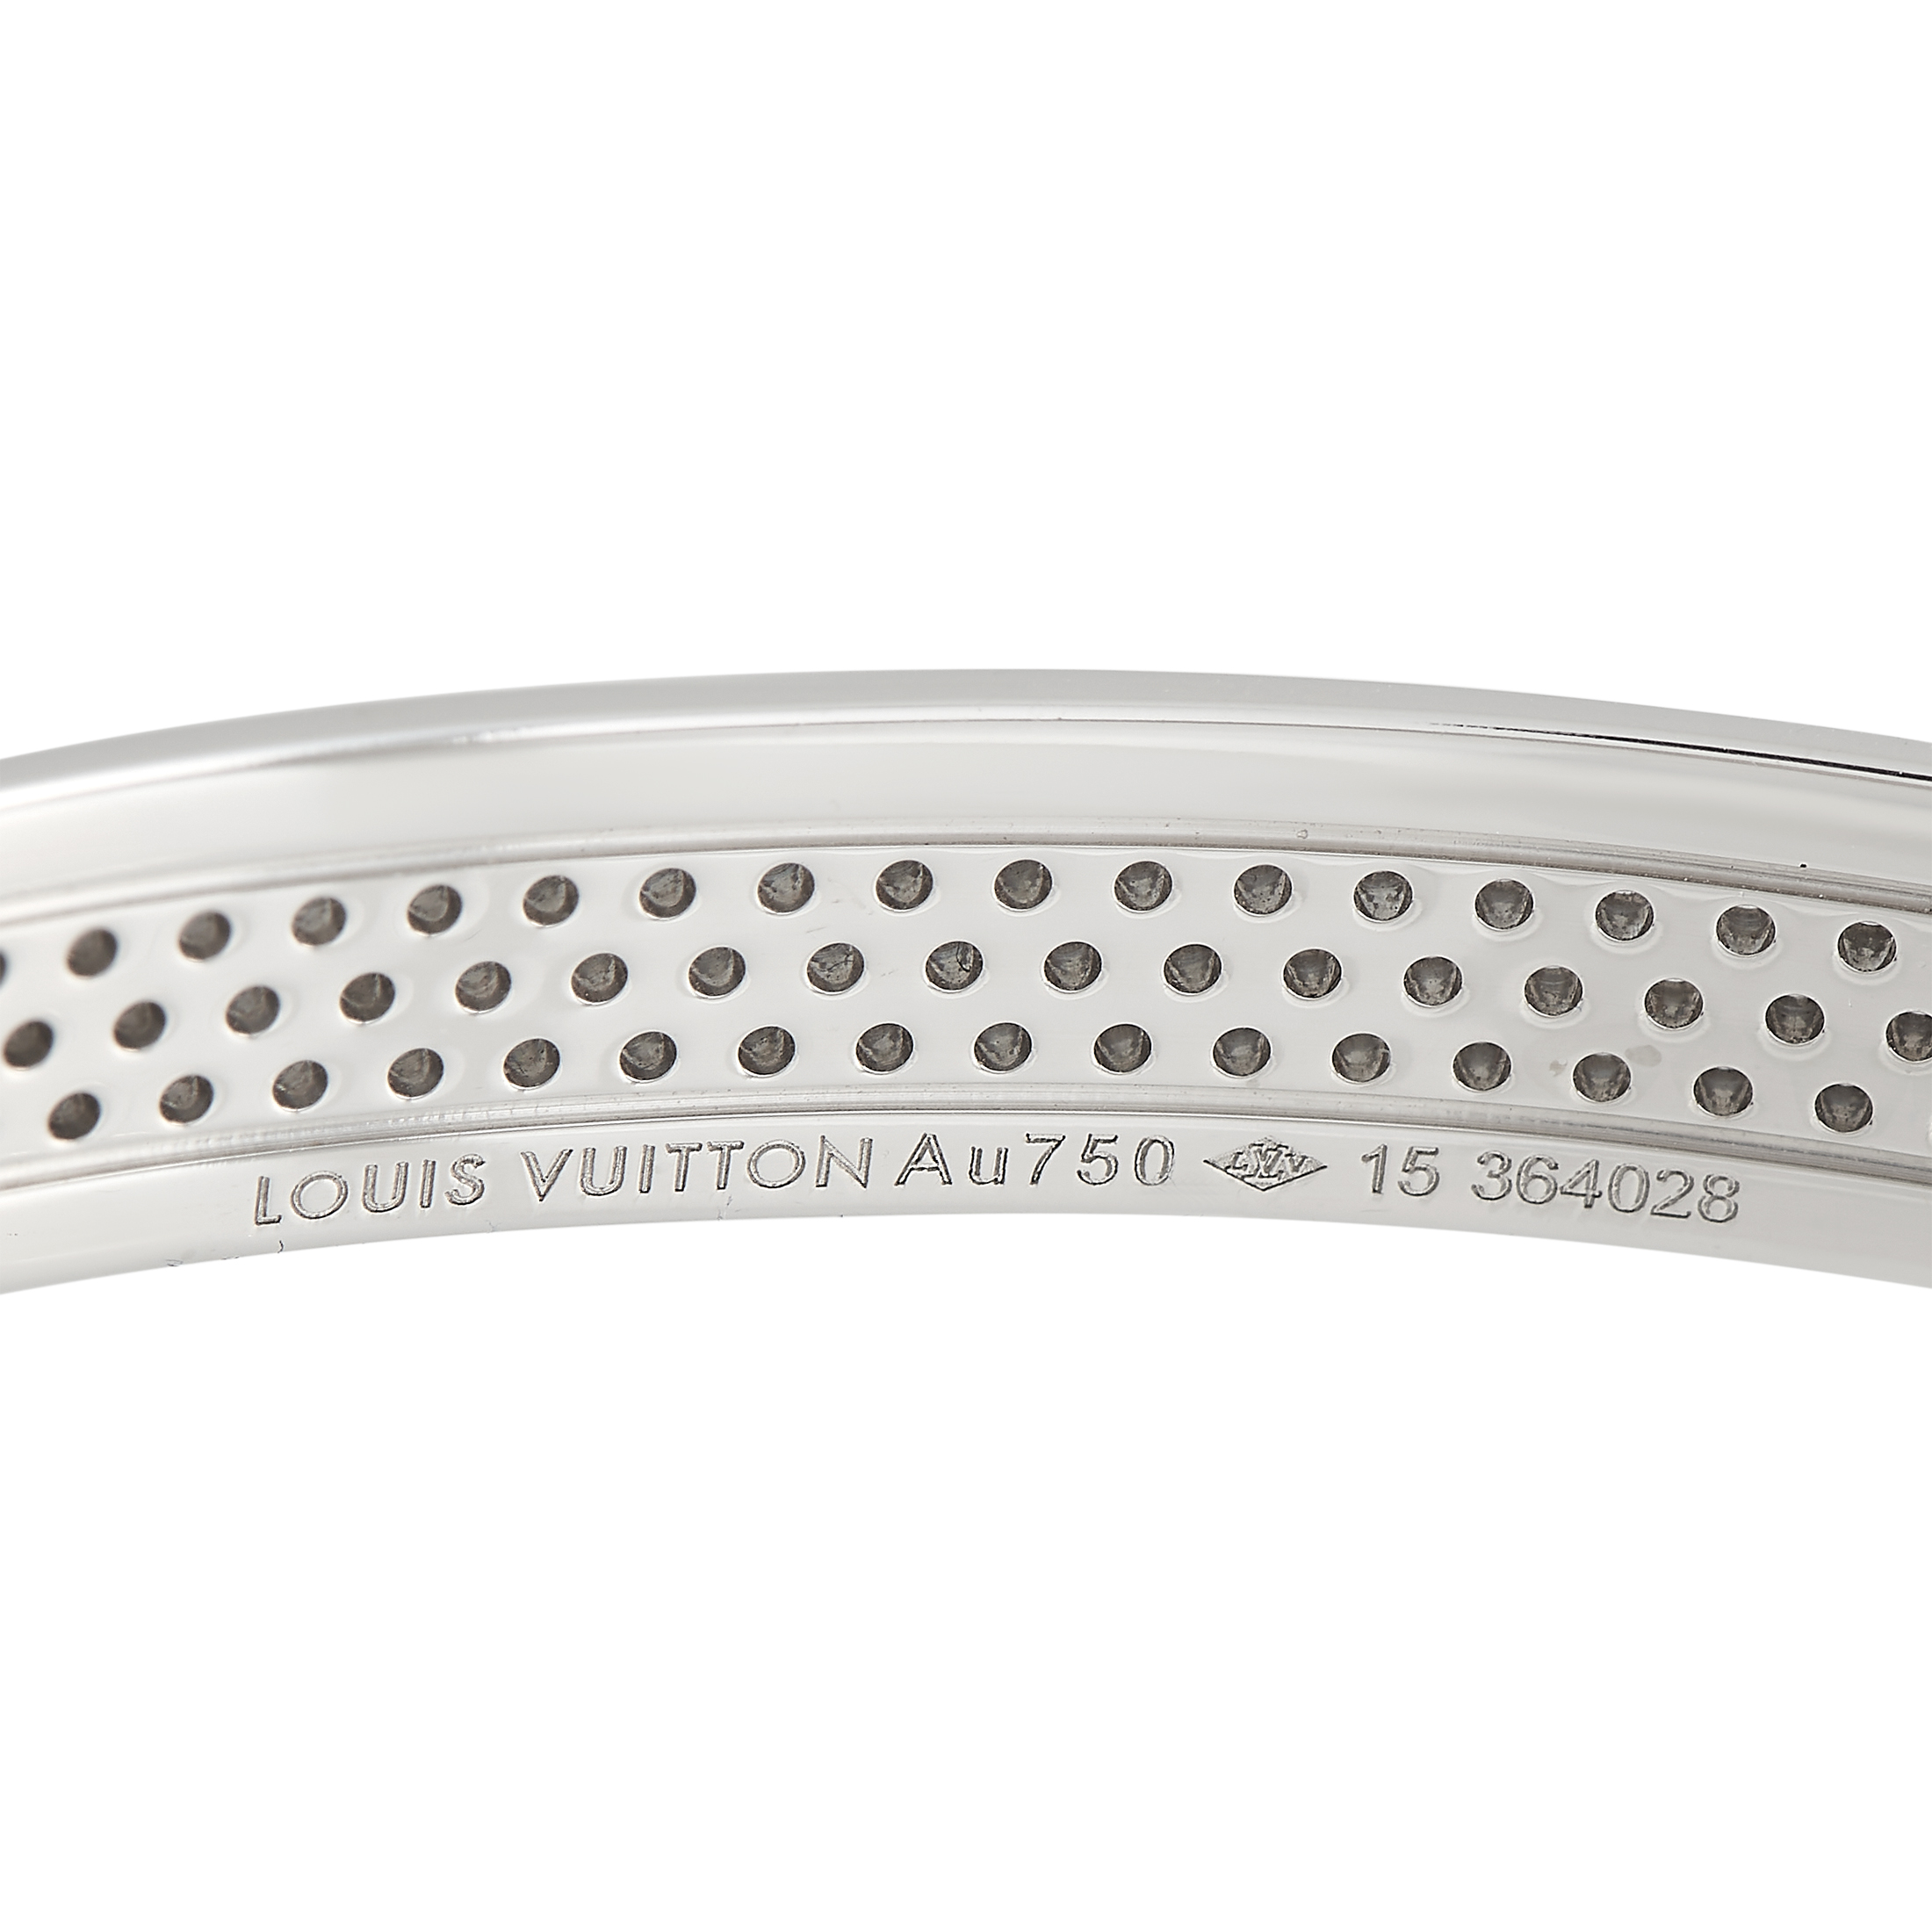 Louis Vuitton Empreinte Bangle, White Gold and Diamonds Grey. Size S